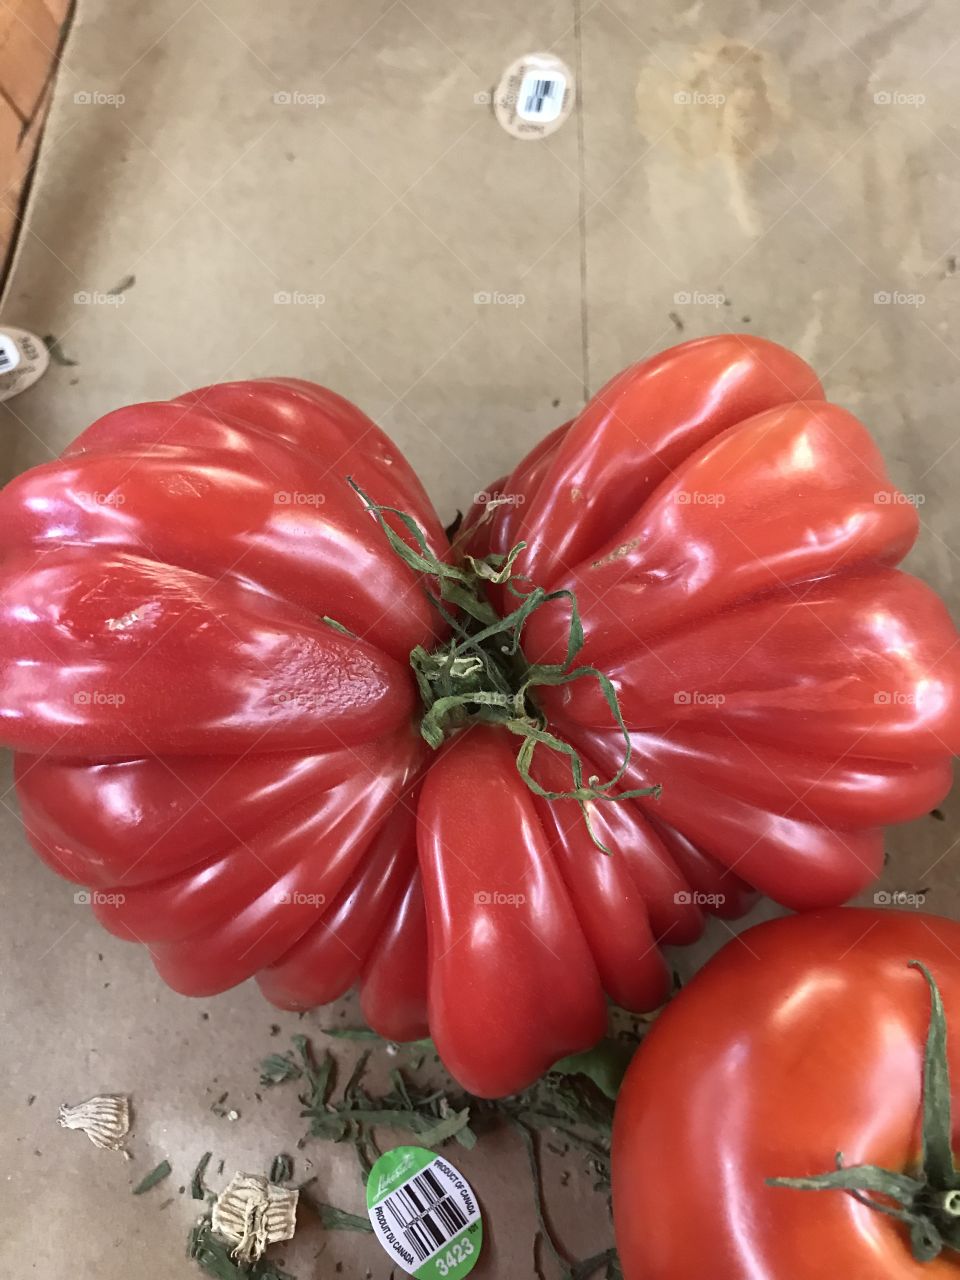 Fantastic tomato